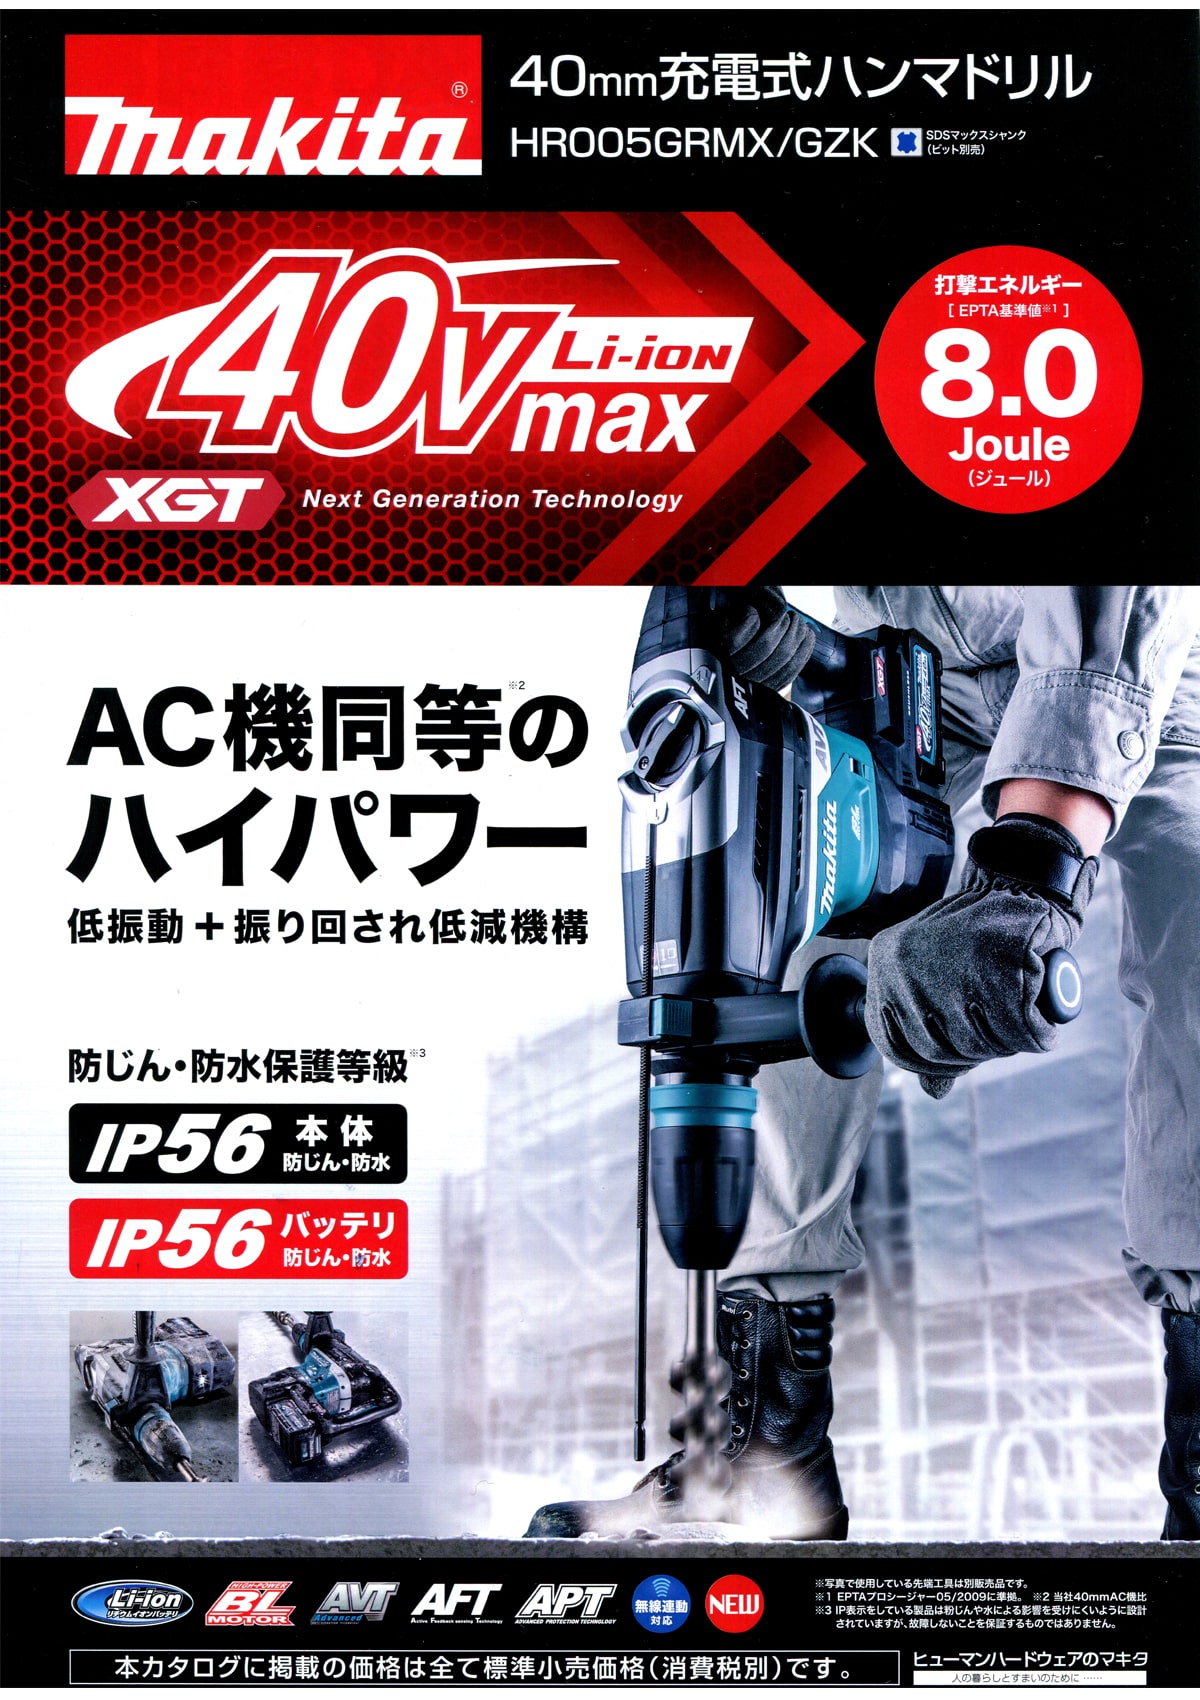 マキタ HR005GRMX 40Vmax 40mm充電式ハンマードリル ウエダ金物【公式